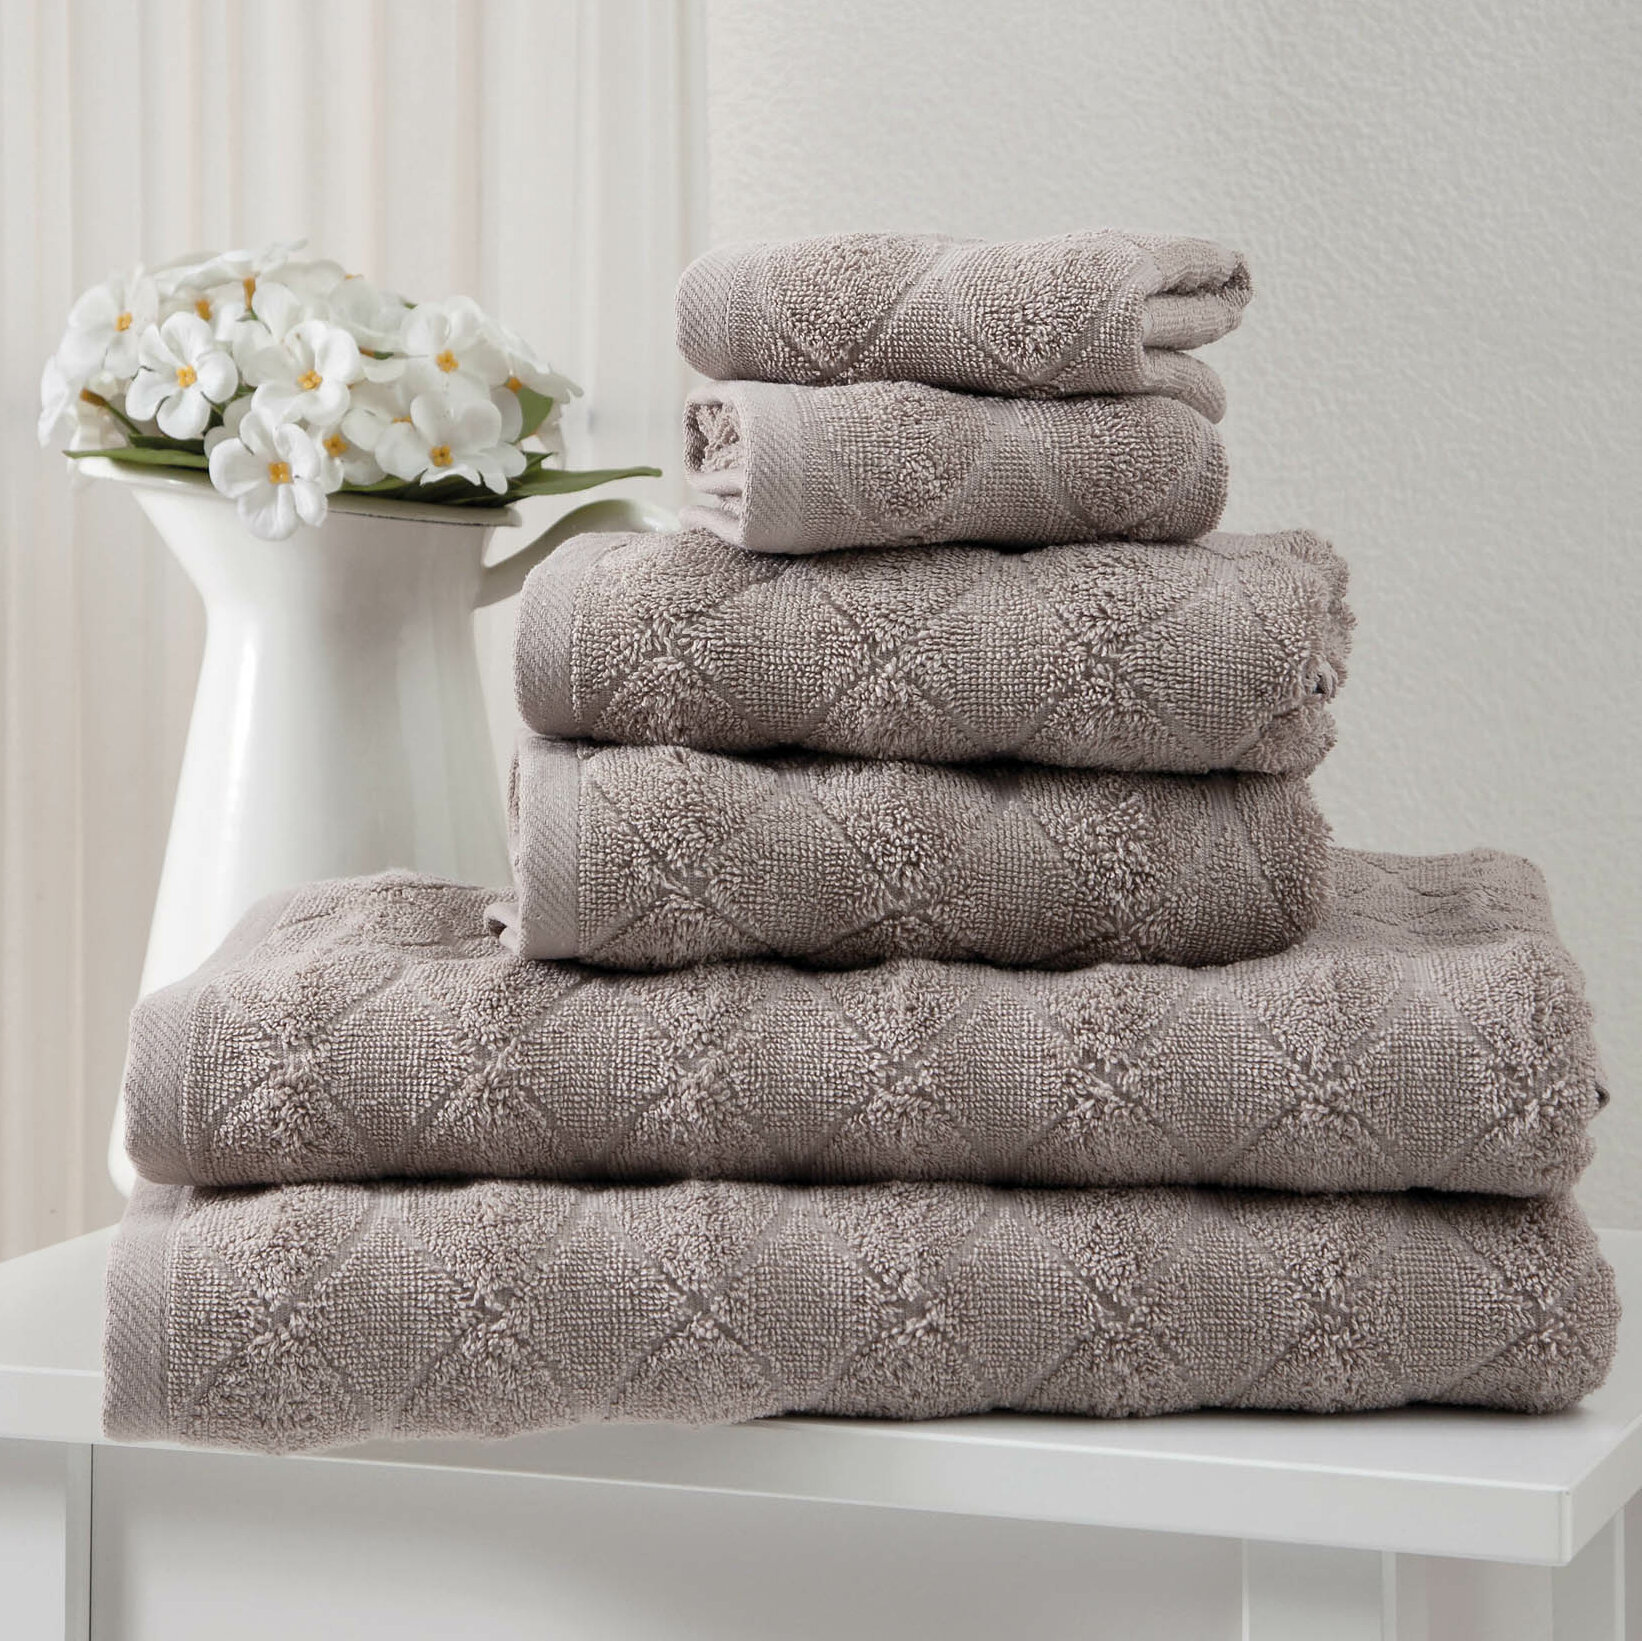 600 GSM Nuage Cotton Blend 6 pc Bath Towel Set by Beautyrest